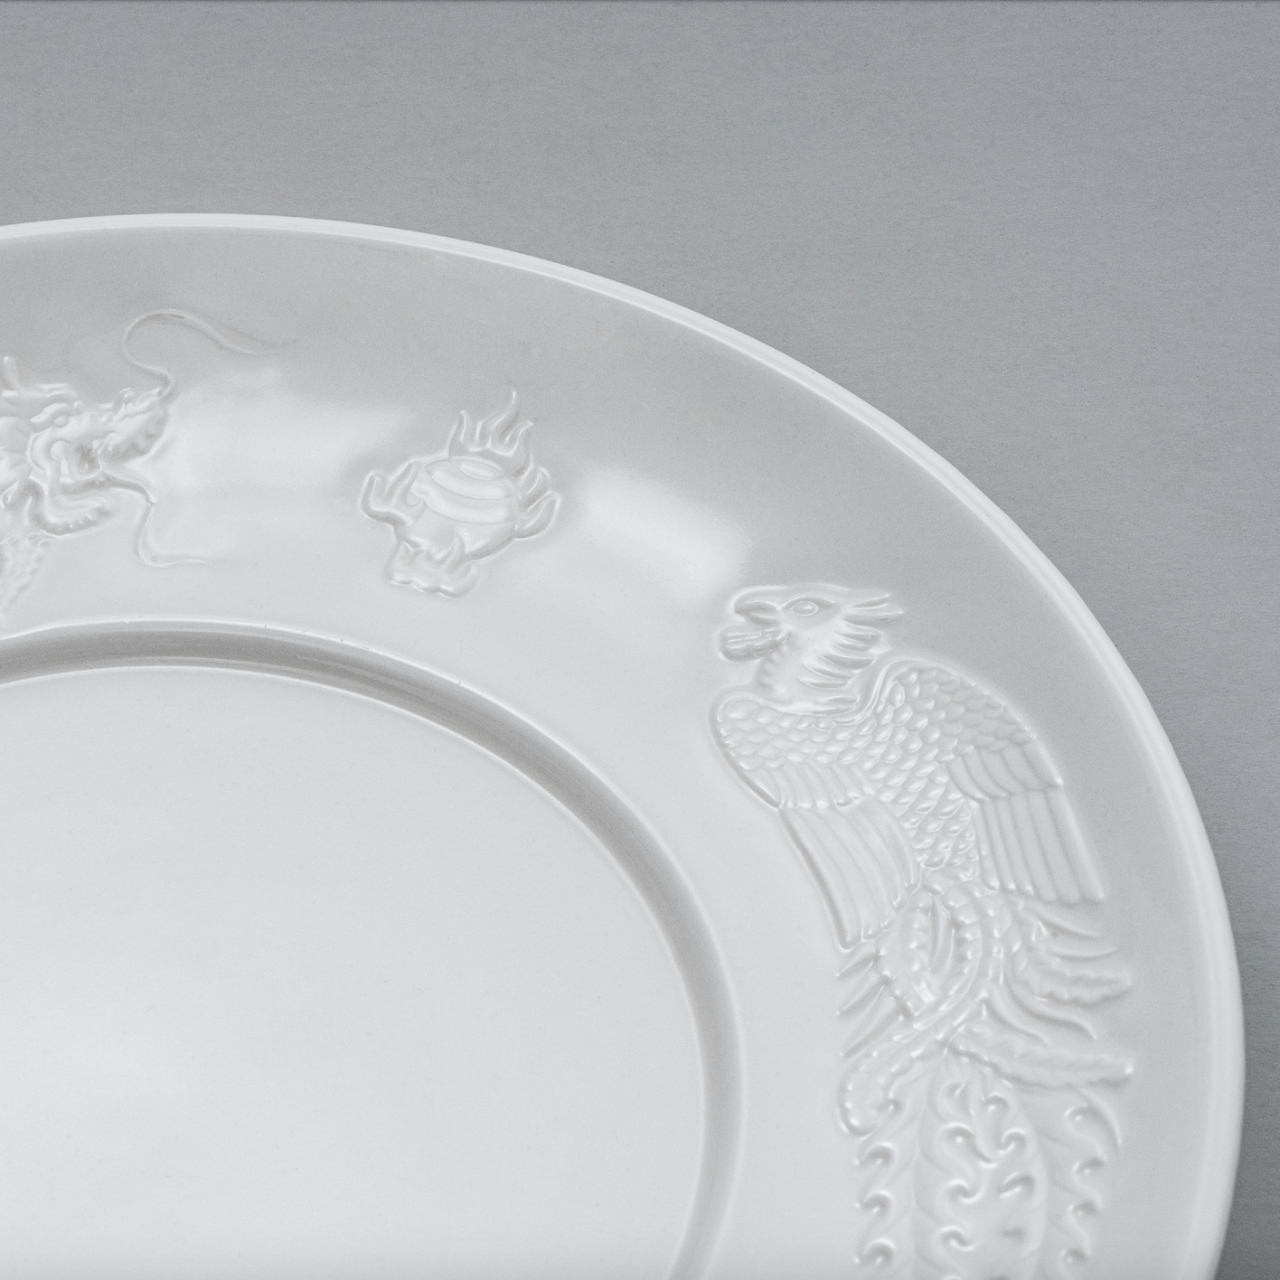 你的在線月老 捐款 NT$1314 即回饋《免洗食器》「龍鳳盤」陶瓷禮盒